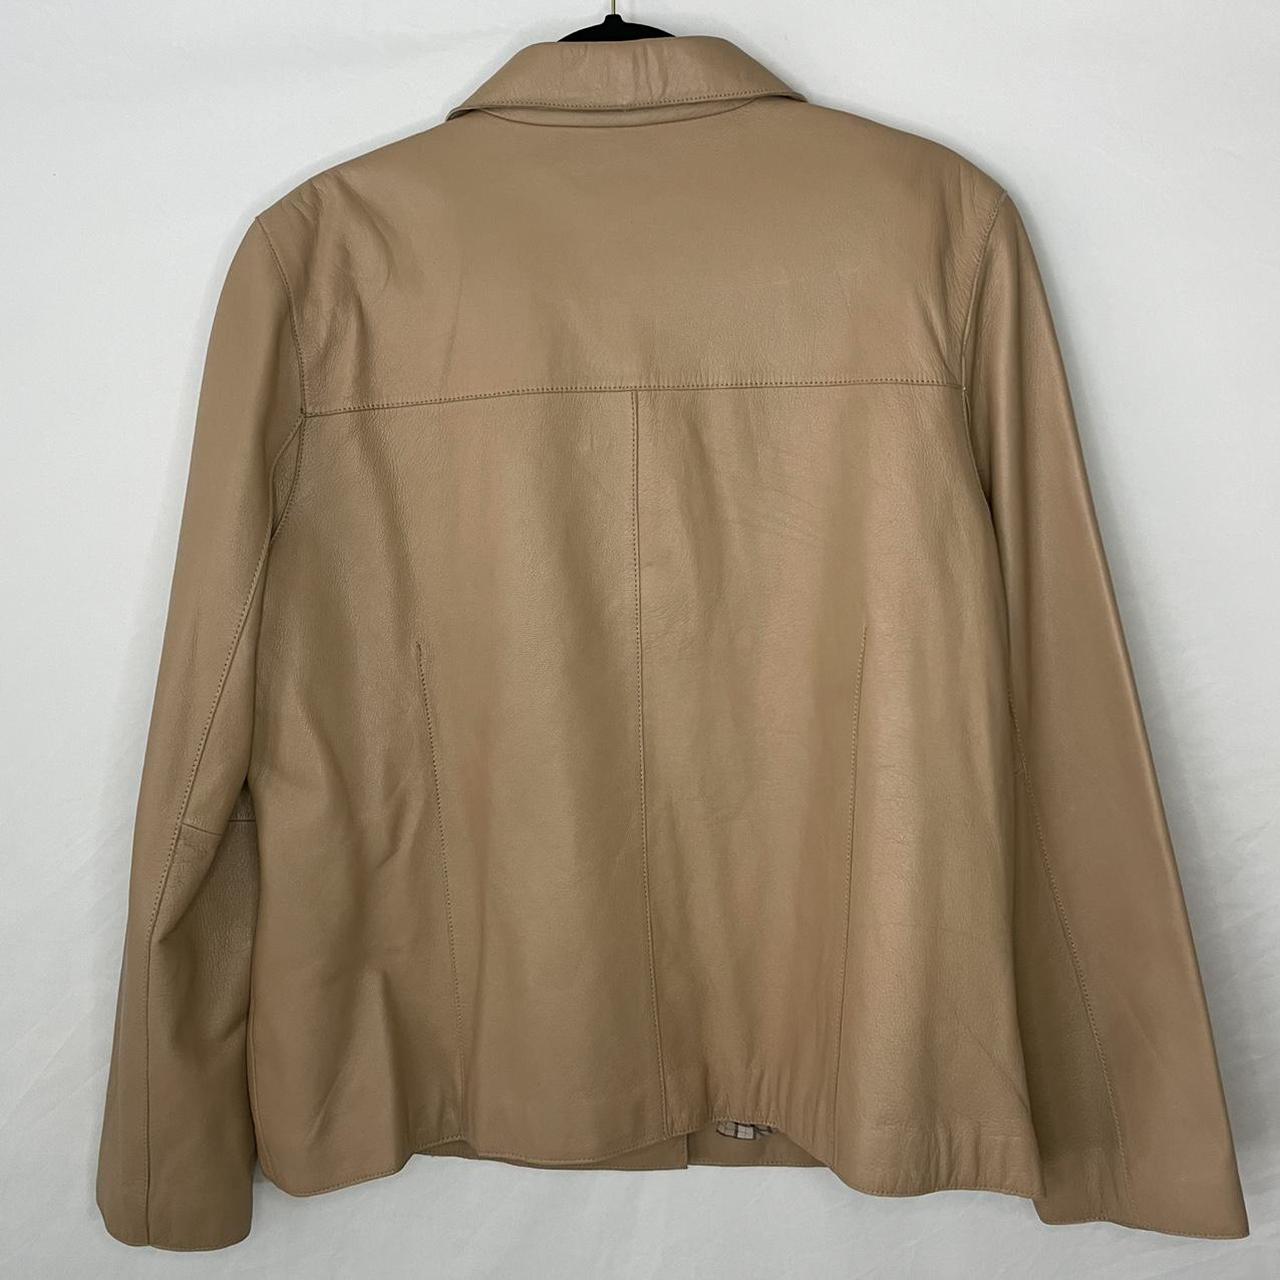 Vintage Leather jacket, by Siena Studio, tan, with... - Depop